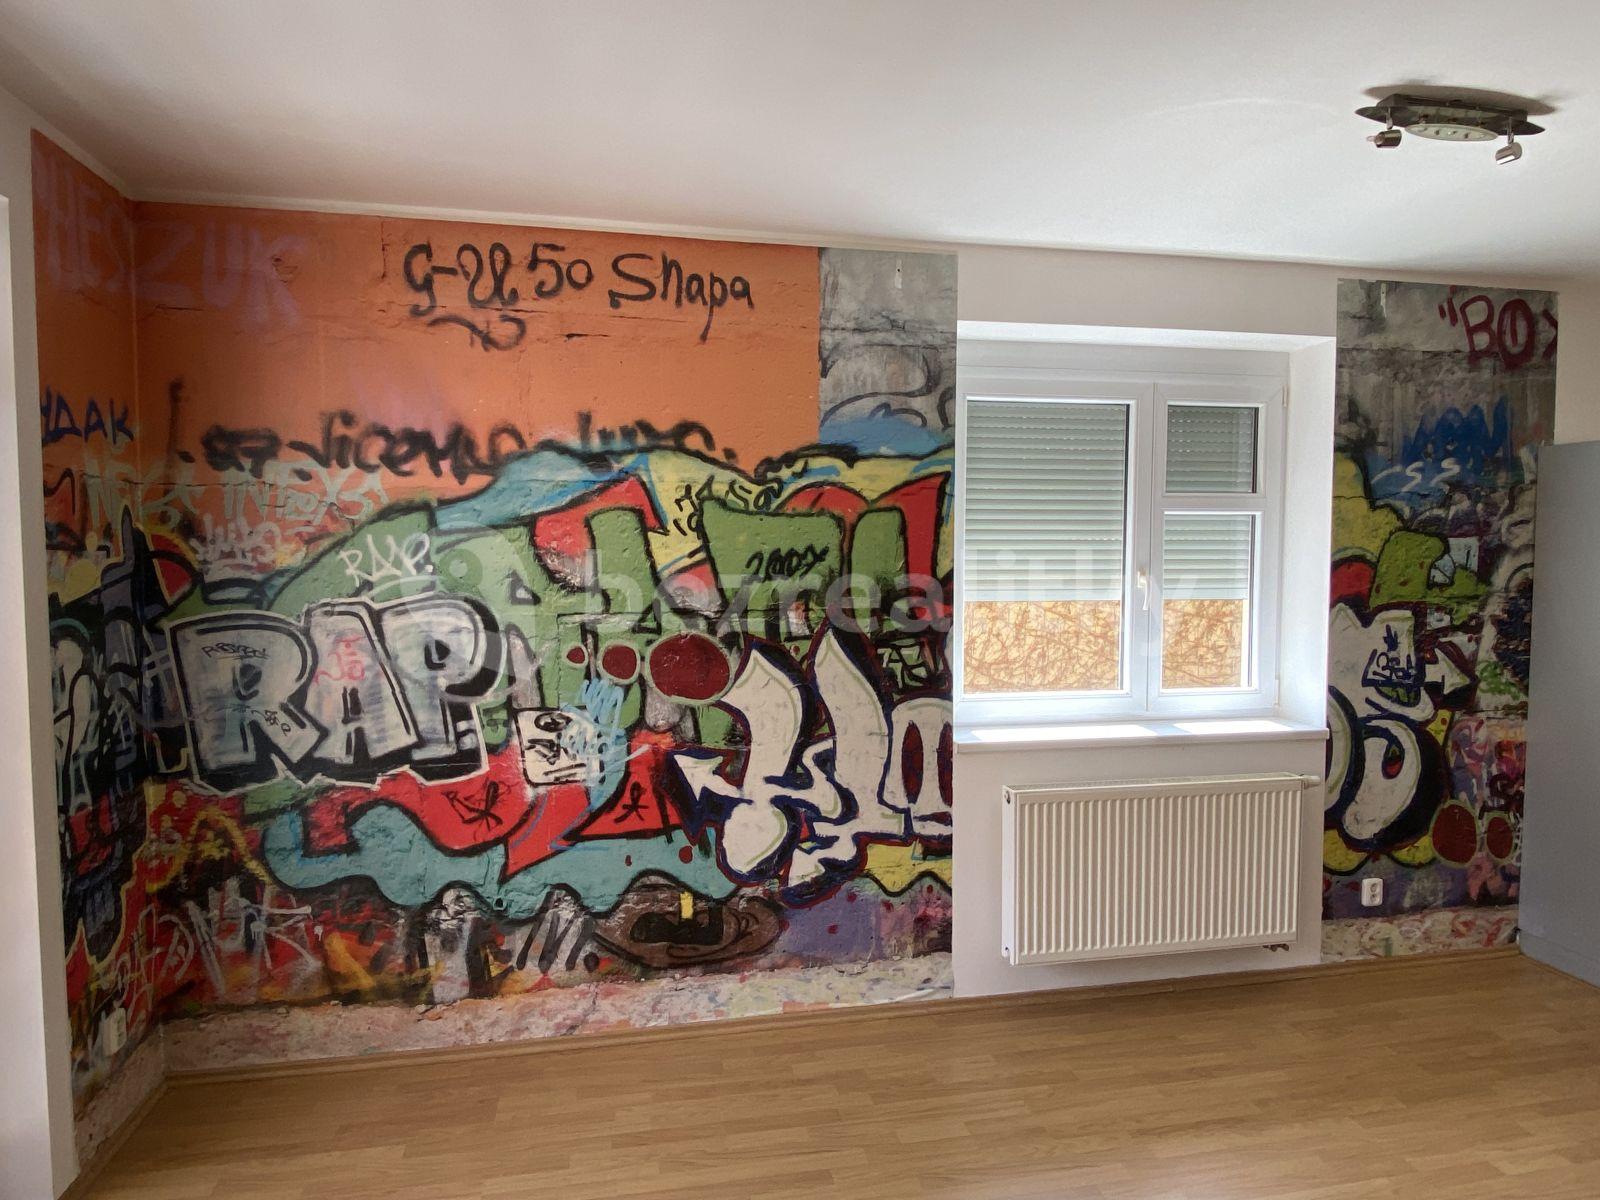 1 bedroom with open-plan kitchen flat to rent, 62 m², K Nádraží, Prague, Prague